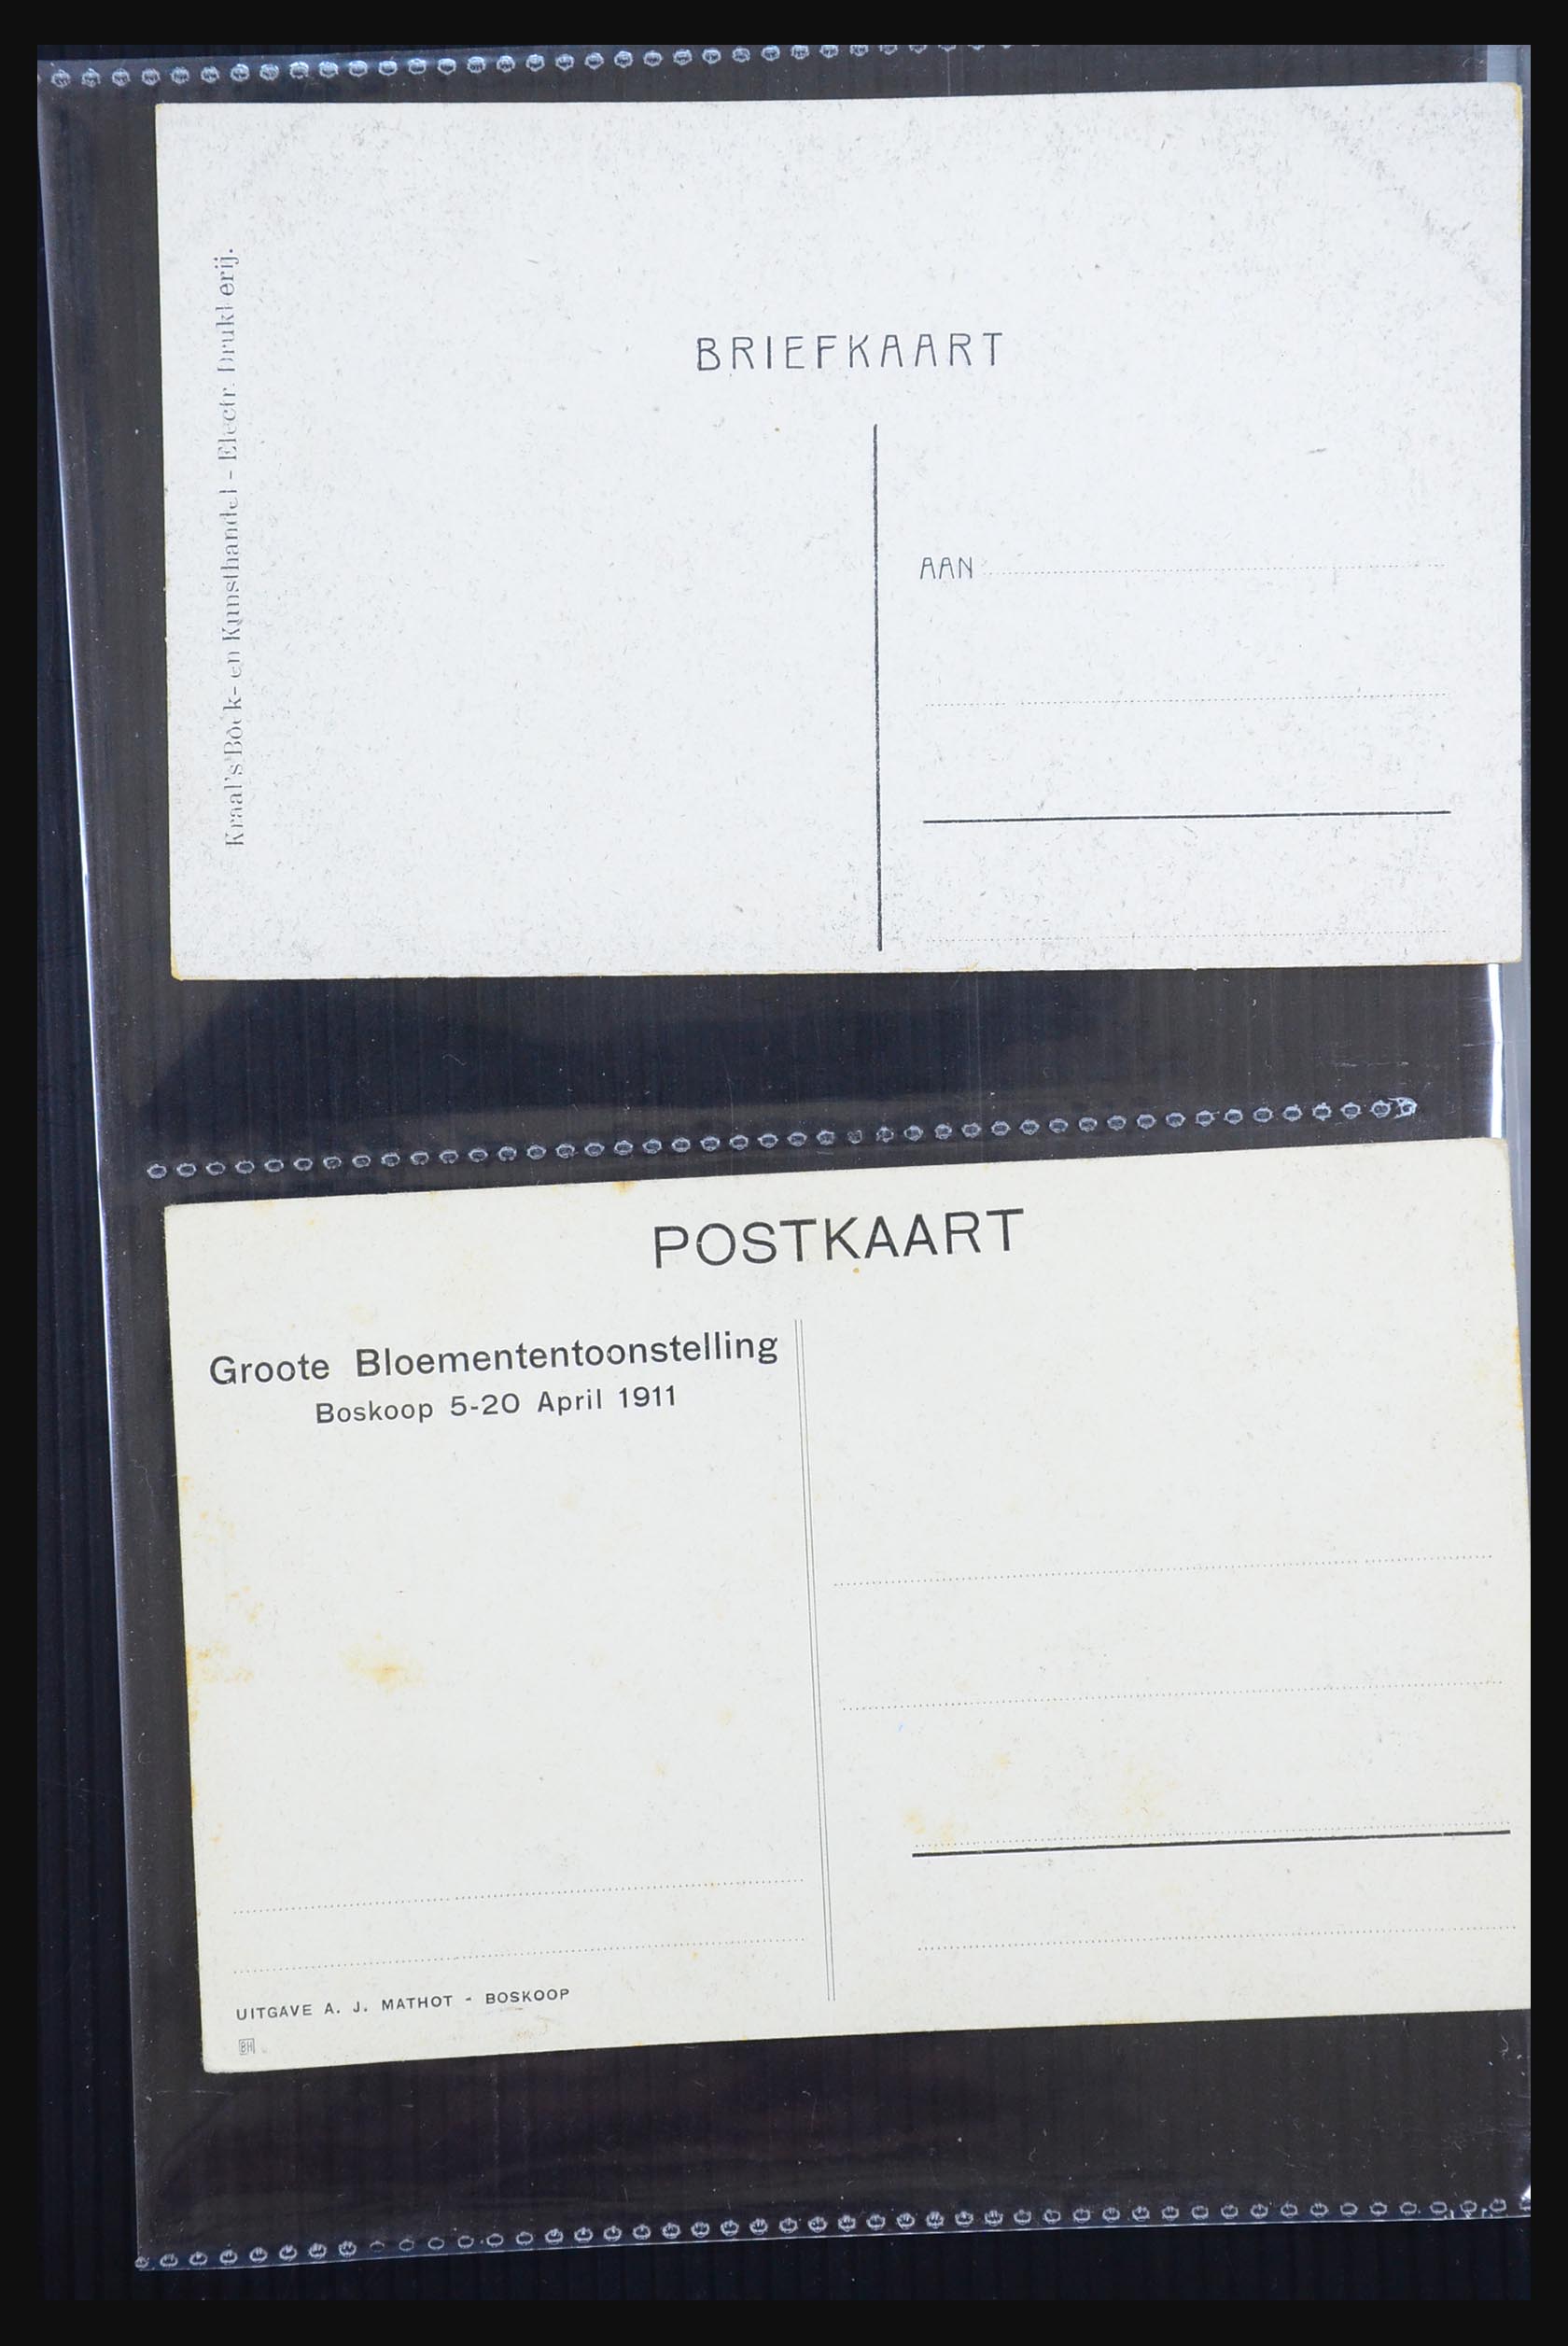 31338 052 - 31338 Nederland ansichtkaarten 1897-1914.